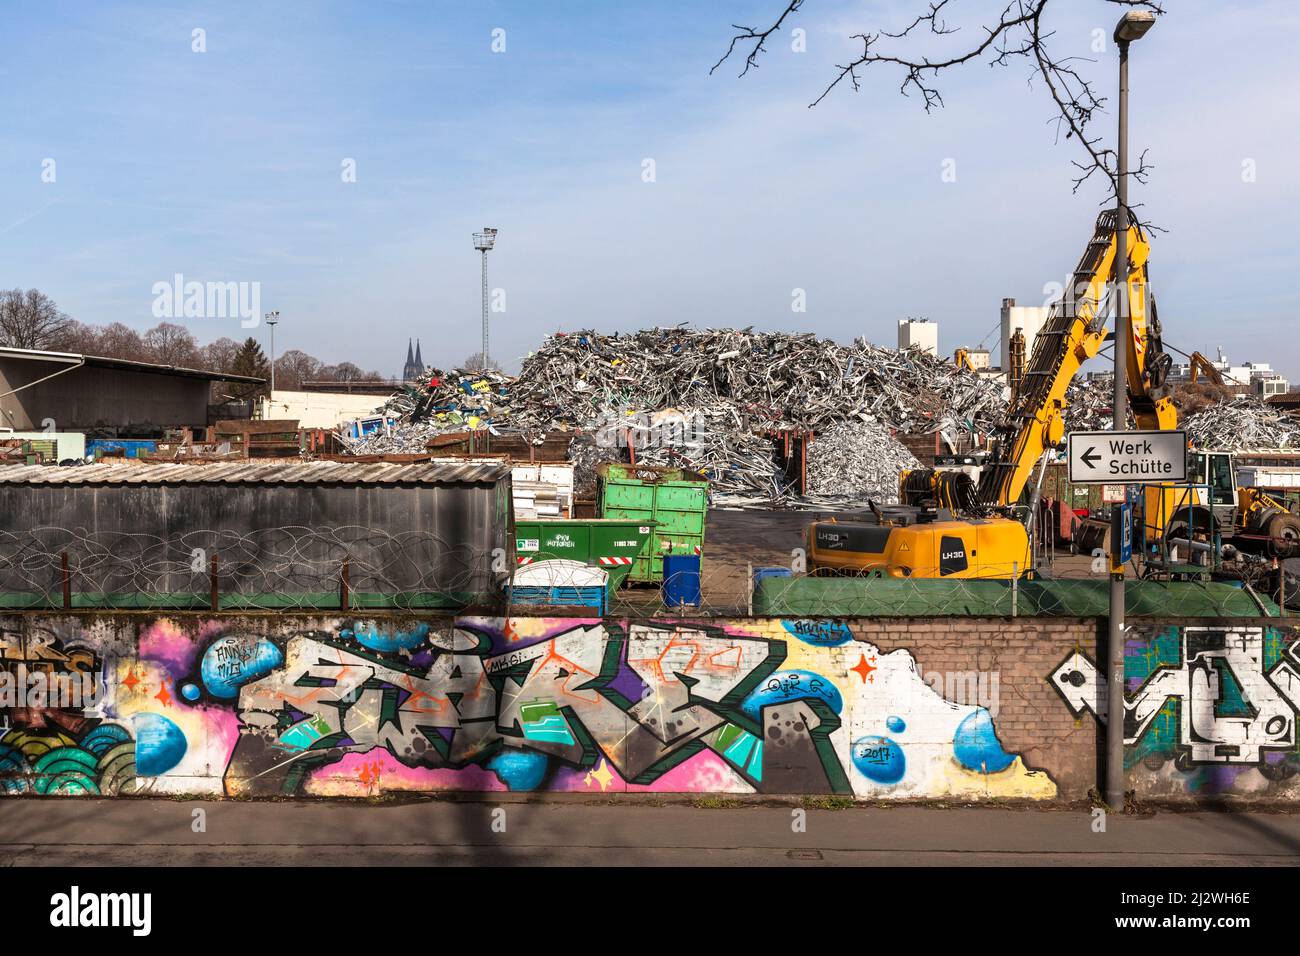 Schrottplatz mit altem Metall im Stadtteil Deutz, im Hintergrund der Dom, Wand mit Graffiti, Köln, Deutschland. Schrottplatz mit Altmetall im Stockfoto